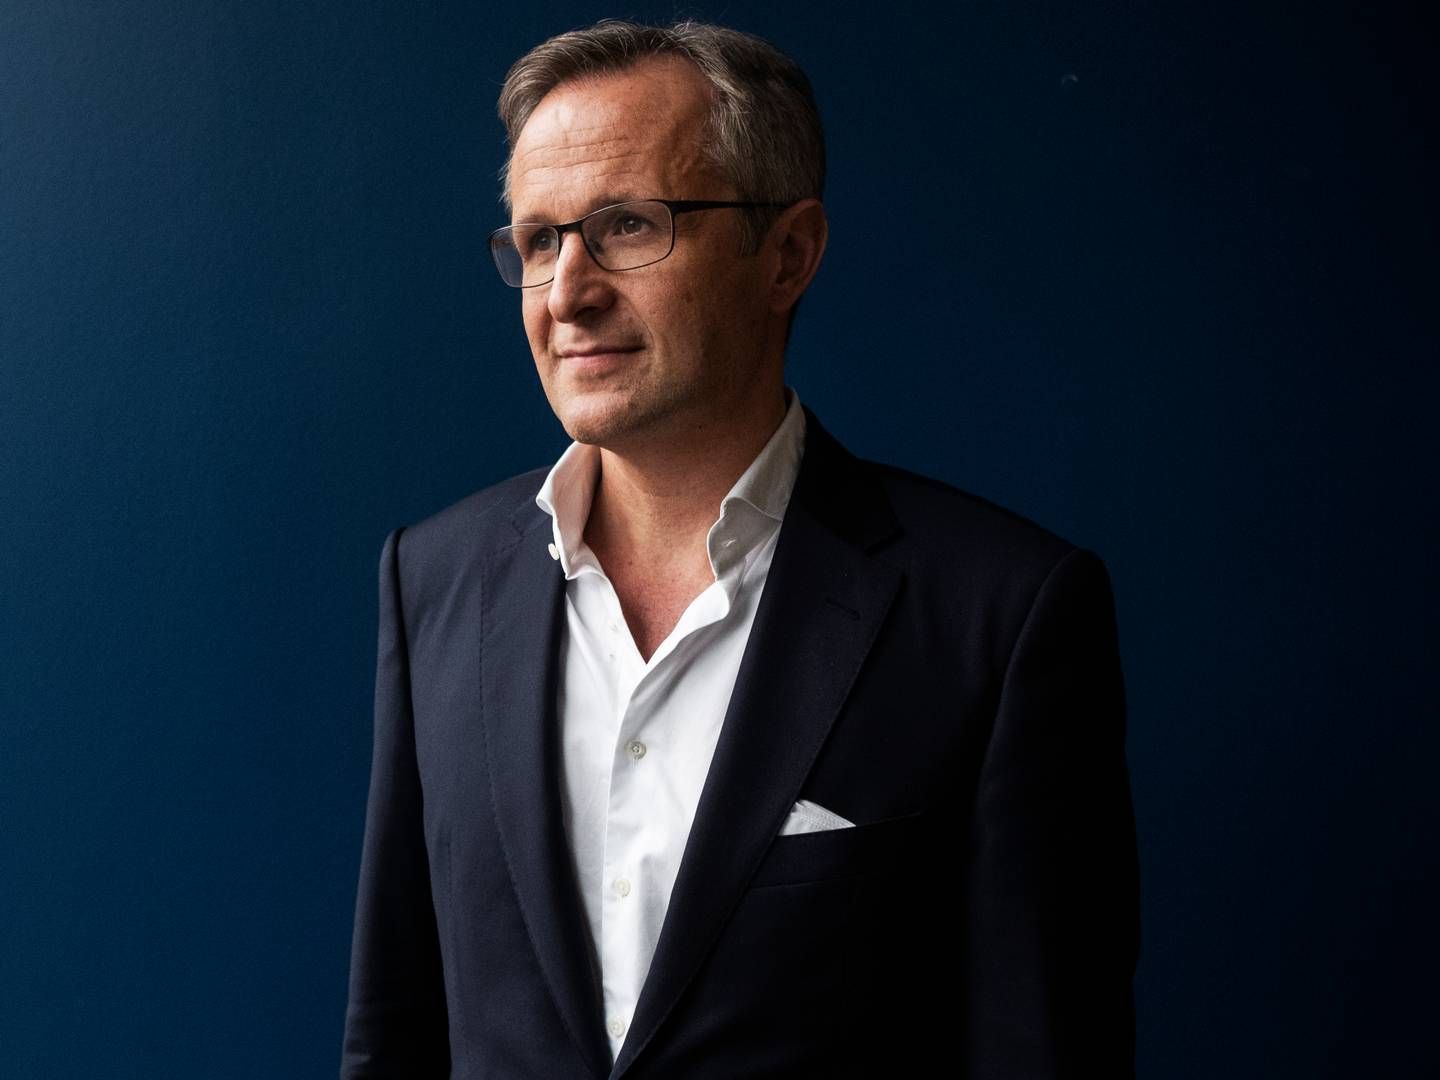 Dagrofa, som har Tomas Pietrangeli som koncernchef, vil fra 2022 til 2024 investere 1,1 mia. kr. under strategien "Fremgang Sammen". | Foto: Gregers Tycho